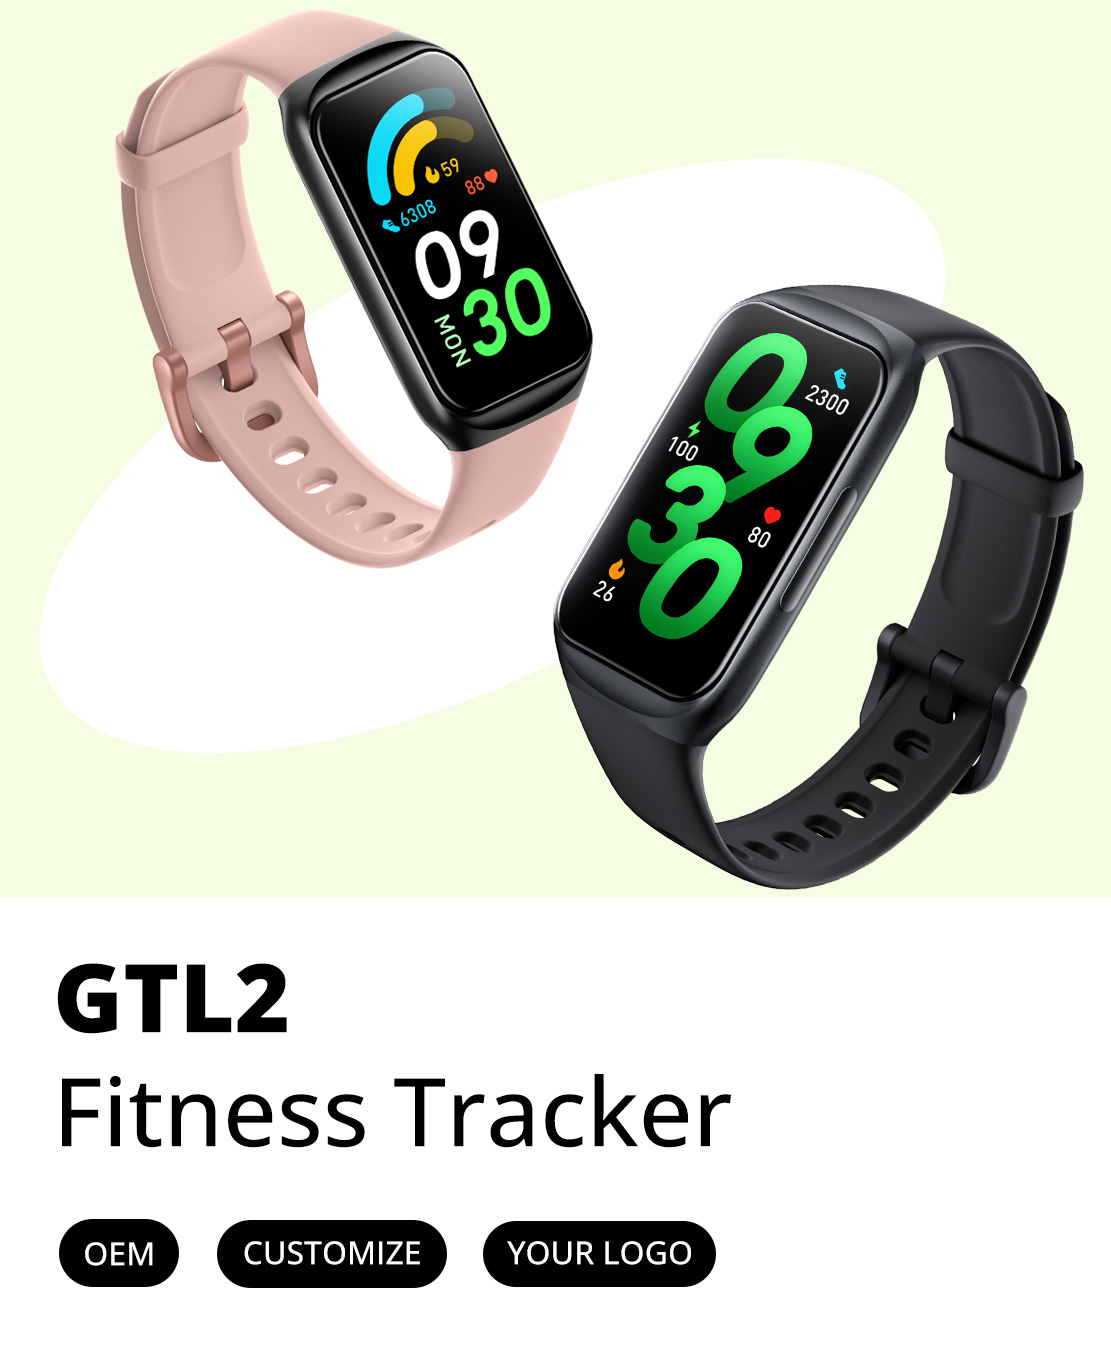 GTL2 Fitness Tracker Poster